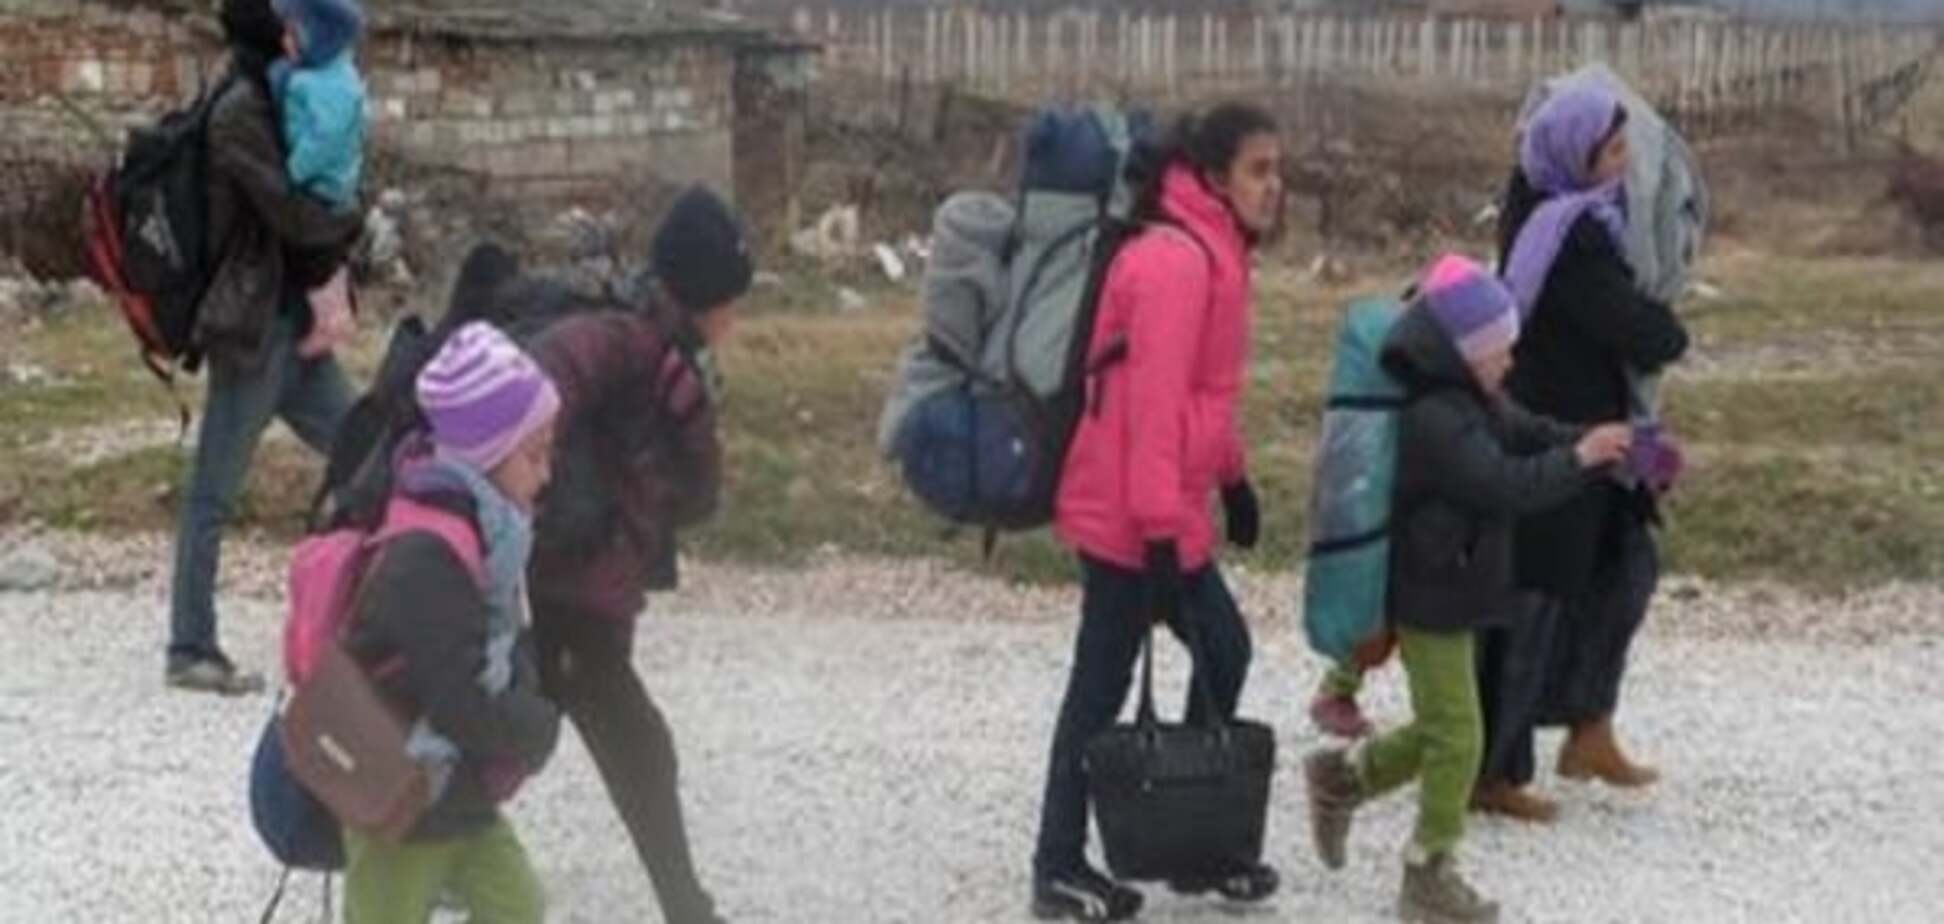 Нова хвиля міграції: в Європу кинулися дружини і діти біженців